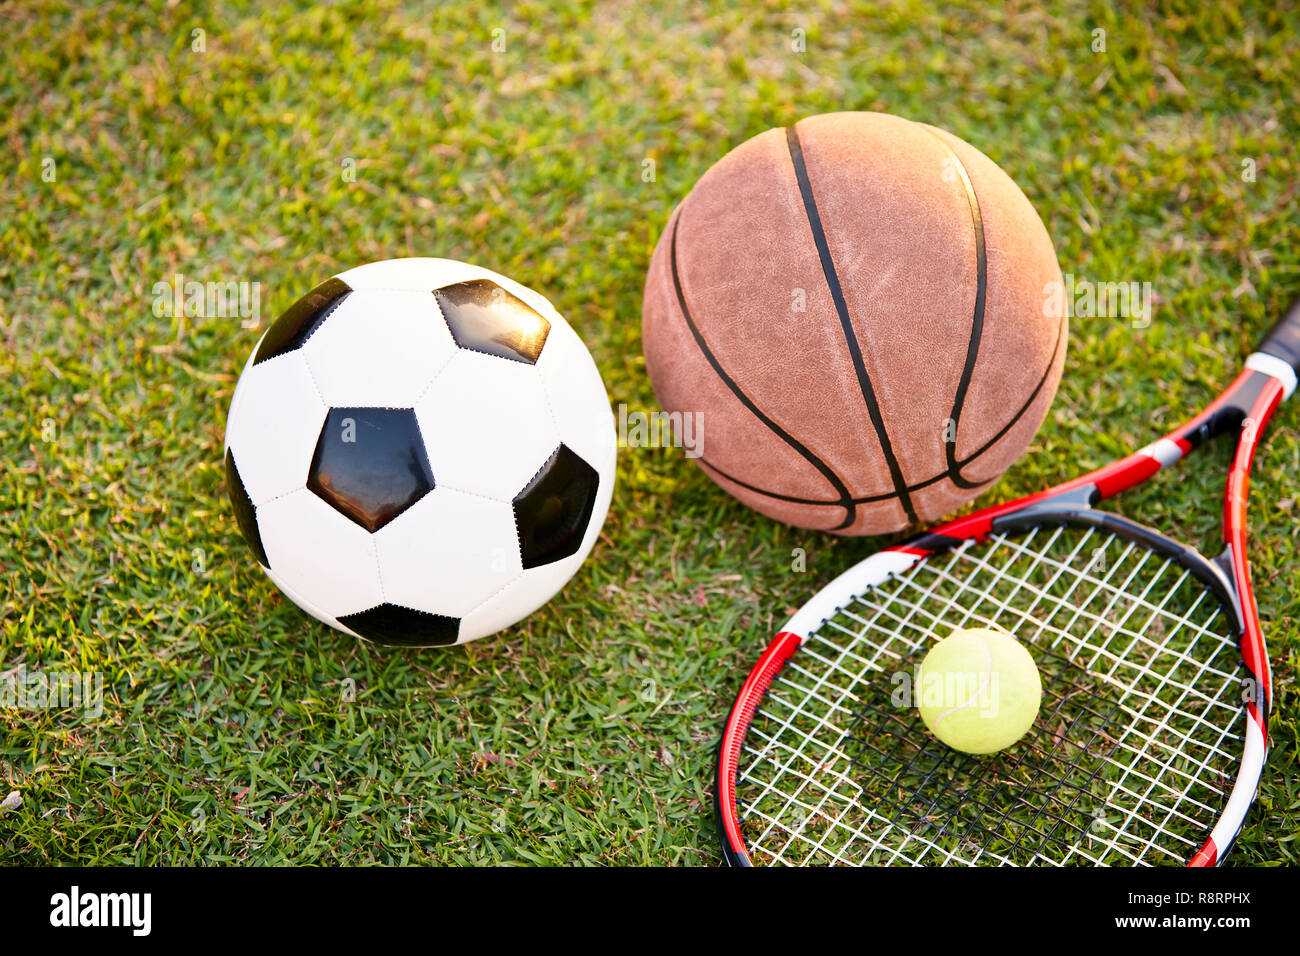 Ballon de soccer de football basket-ball tennis racket portées sur l'herbe au coucher du soleil, gros plan Banque D'Images